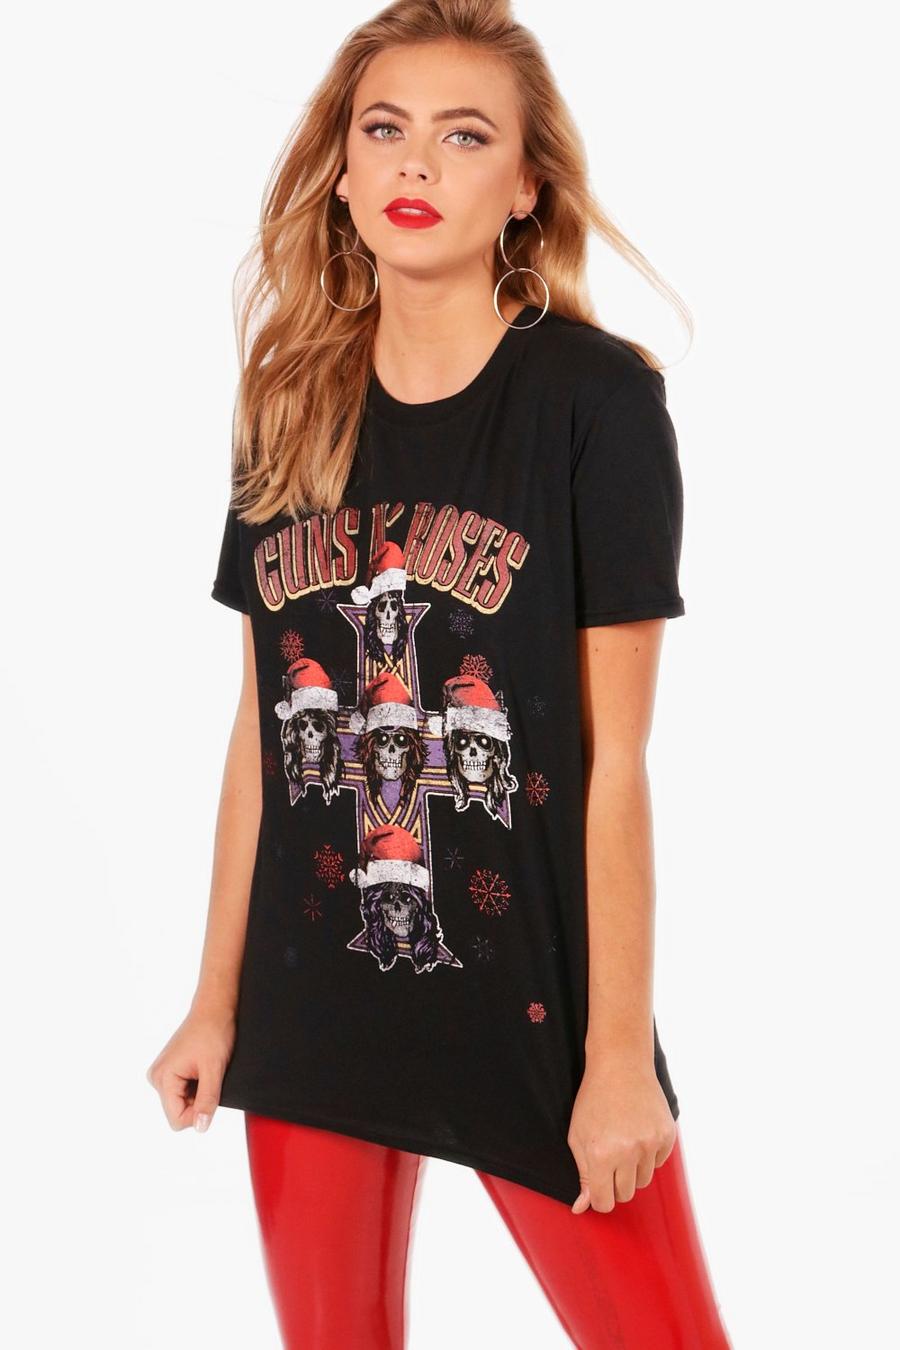 Guns 'N' Roses Christmas Band T-Shirt image number 1